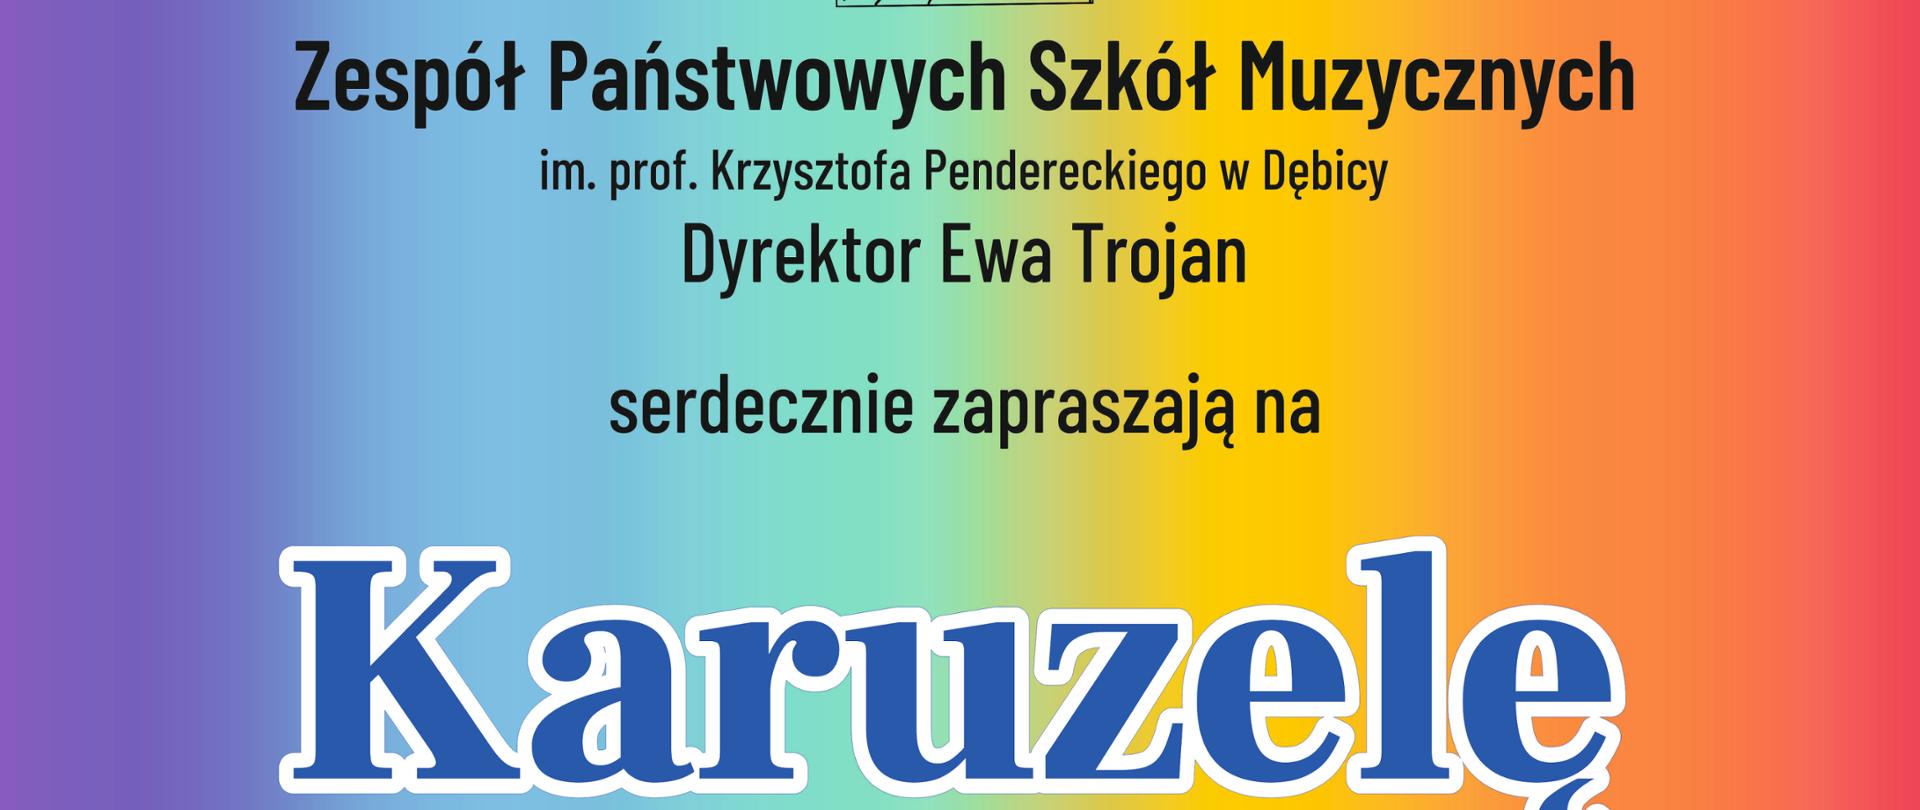 Plakat z wydarzenia - na tęczowym tle na górze plakatu umieszczono logo ZPSM w Dębicy, czarny napis z nazwą i dyrektorem szkoły, poniżej niebieskim kolorem napis Karuzela, poniżej żółtym Muzyczna; pod napisem po prawej stronie znajduje się informacja napisana czarnym kolorem kto występuje a po lewej na fladze ukraińskiej jest biały napisem dużymi literami BEZ GRANIC; pod tymi informacjami po prawej stronie umieszczono kolorowe nuty informację o tym że wstęp jest wolny i białym napisem wskazano prowadzącego a po lewej w zółtym kółku niebieskim kolorem datę i godzinę wydarzenia; pod tą informacją jest na niebiesko napisane miejsce wydarzenia. Poniżej umieszczono czarnym napisem dane i adres szkoły 